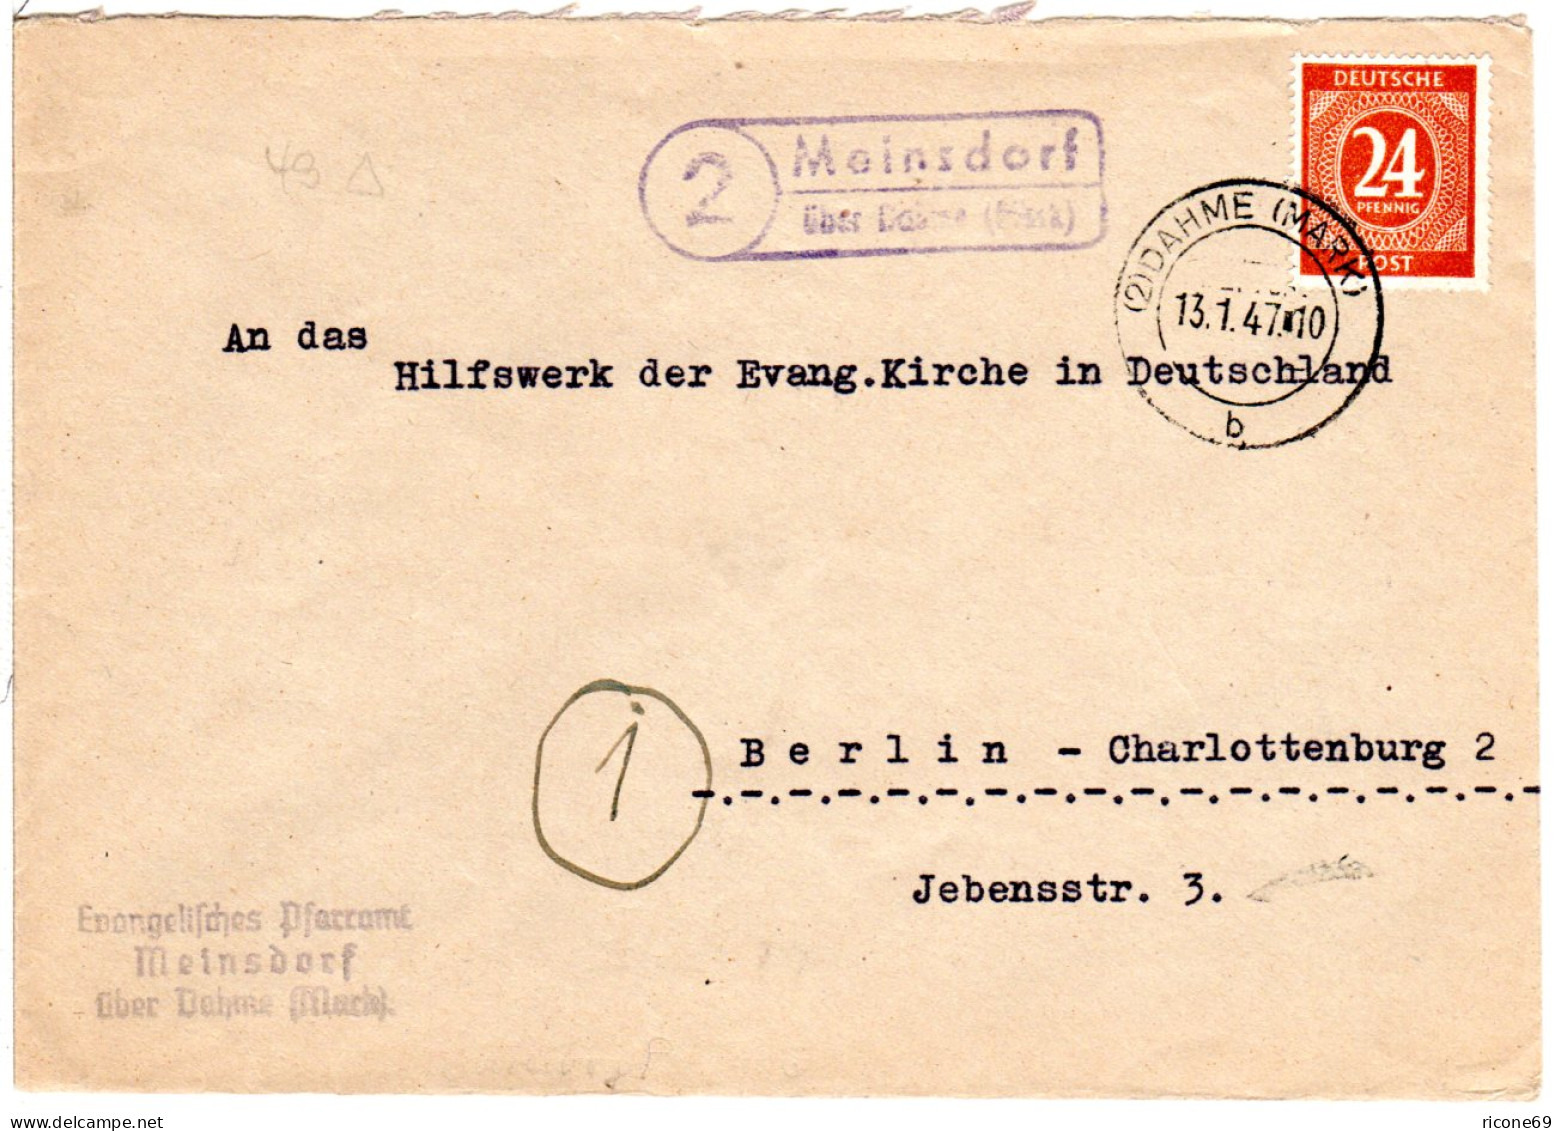 1947, Landpost Stpl. 2 MEINSDORF über Dahme (Mark) Auf Pfarramt Brief M. 24 Pf. - Covers & Documents